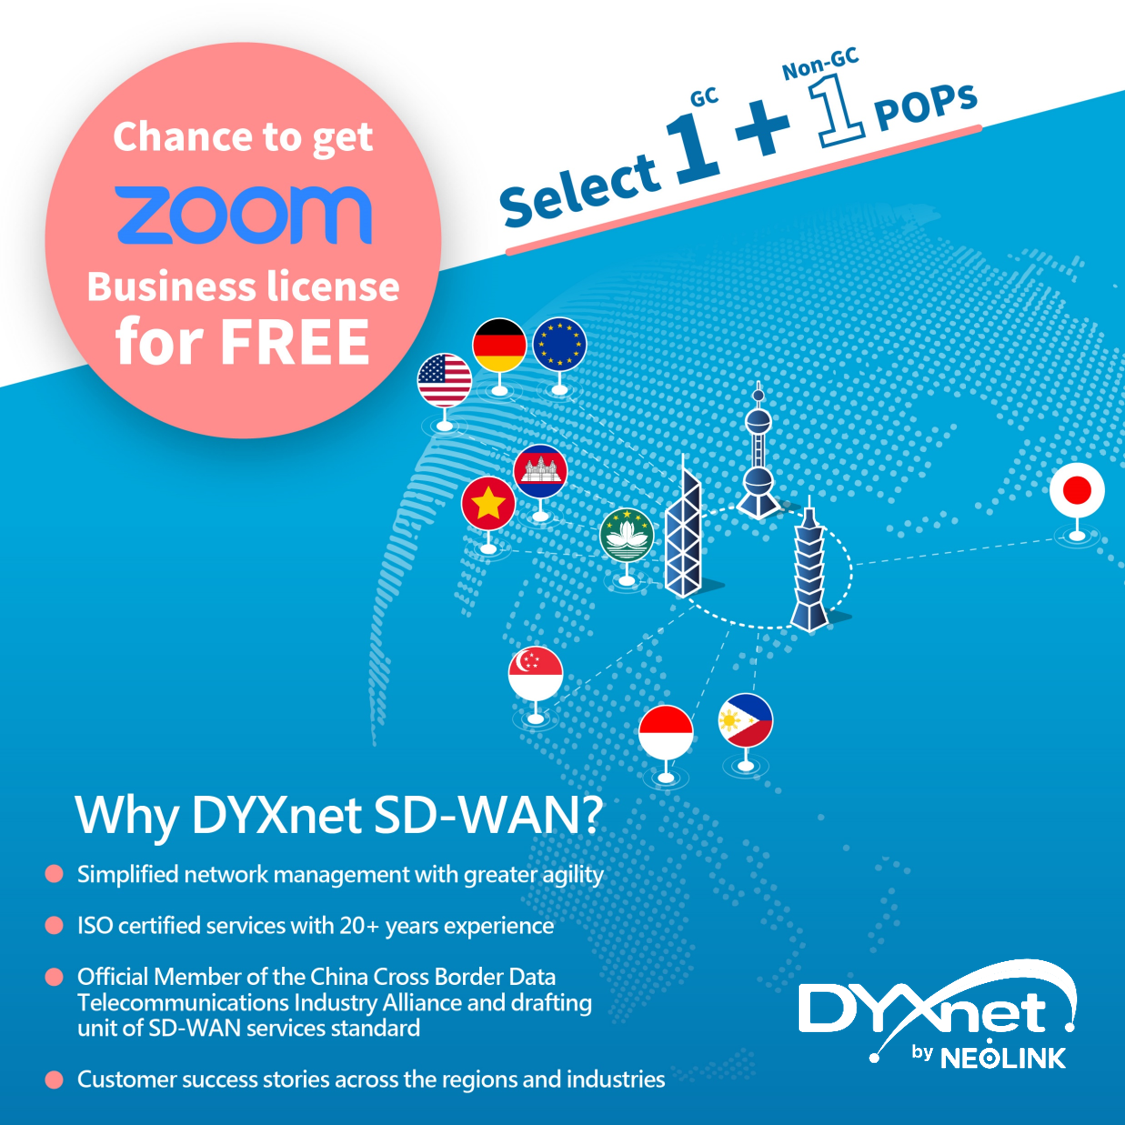 DYXnet SD-WAN Offer 2022